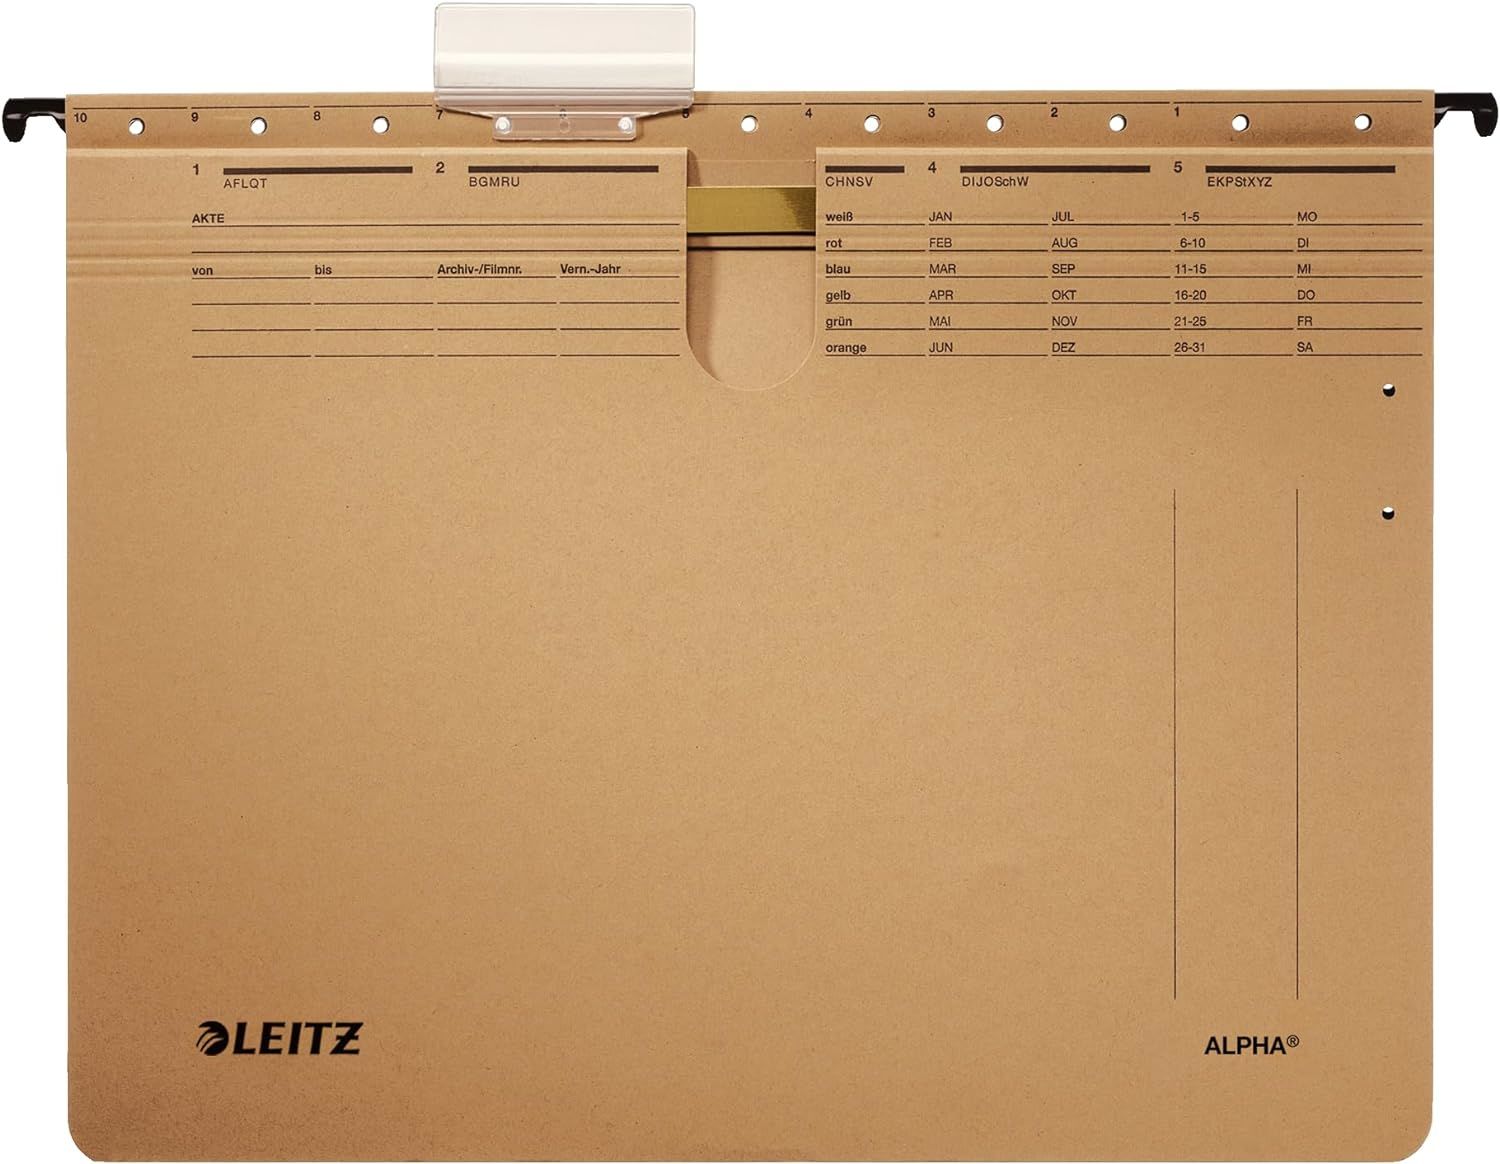 Leitz 1914 Alpha Askılı Dosya Telli 10'lu Kraft